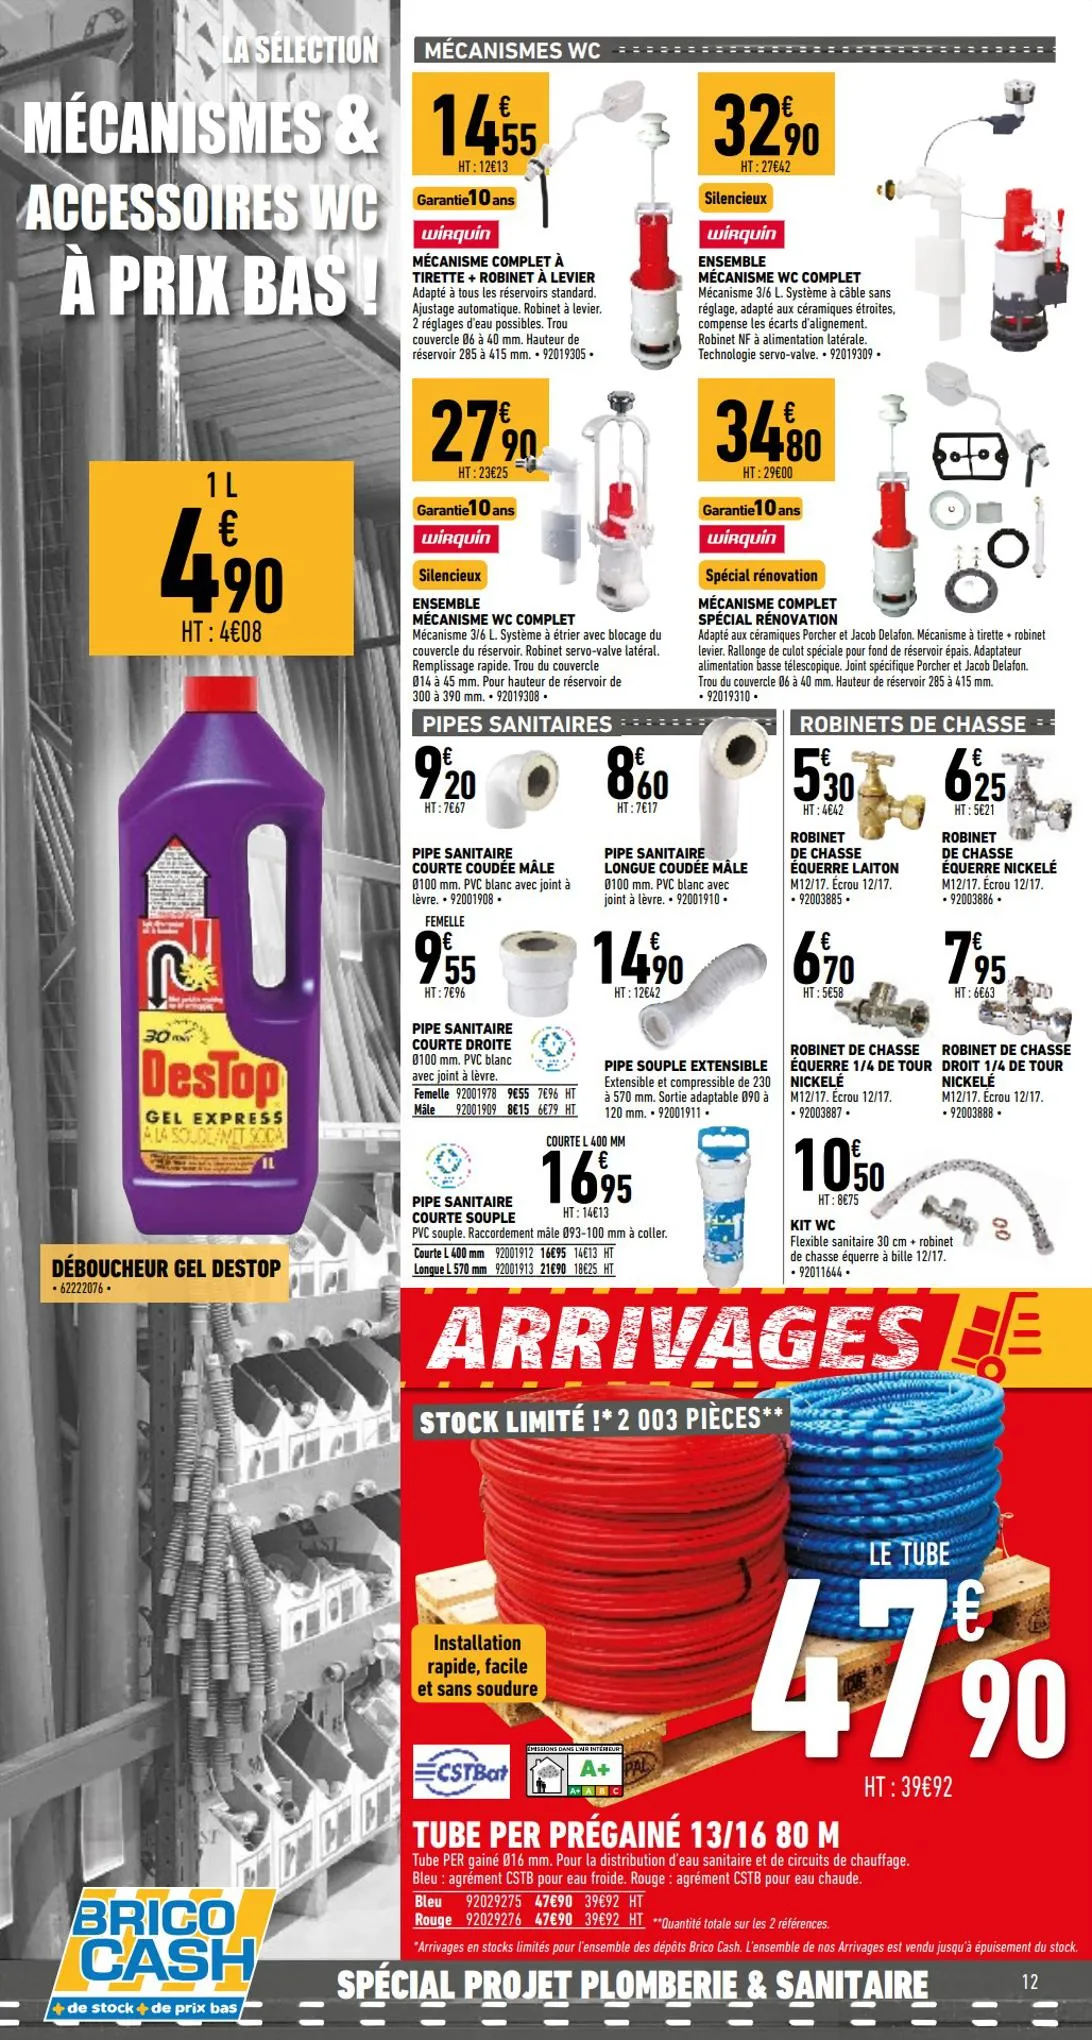 Catalogue Spécial projet plomberie et sanitaire, page 00012